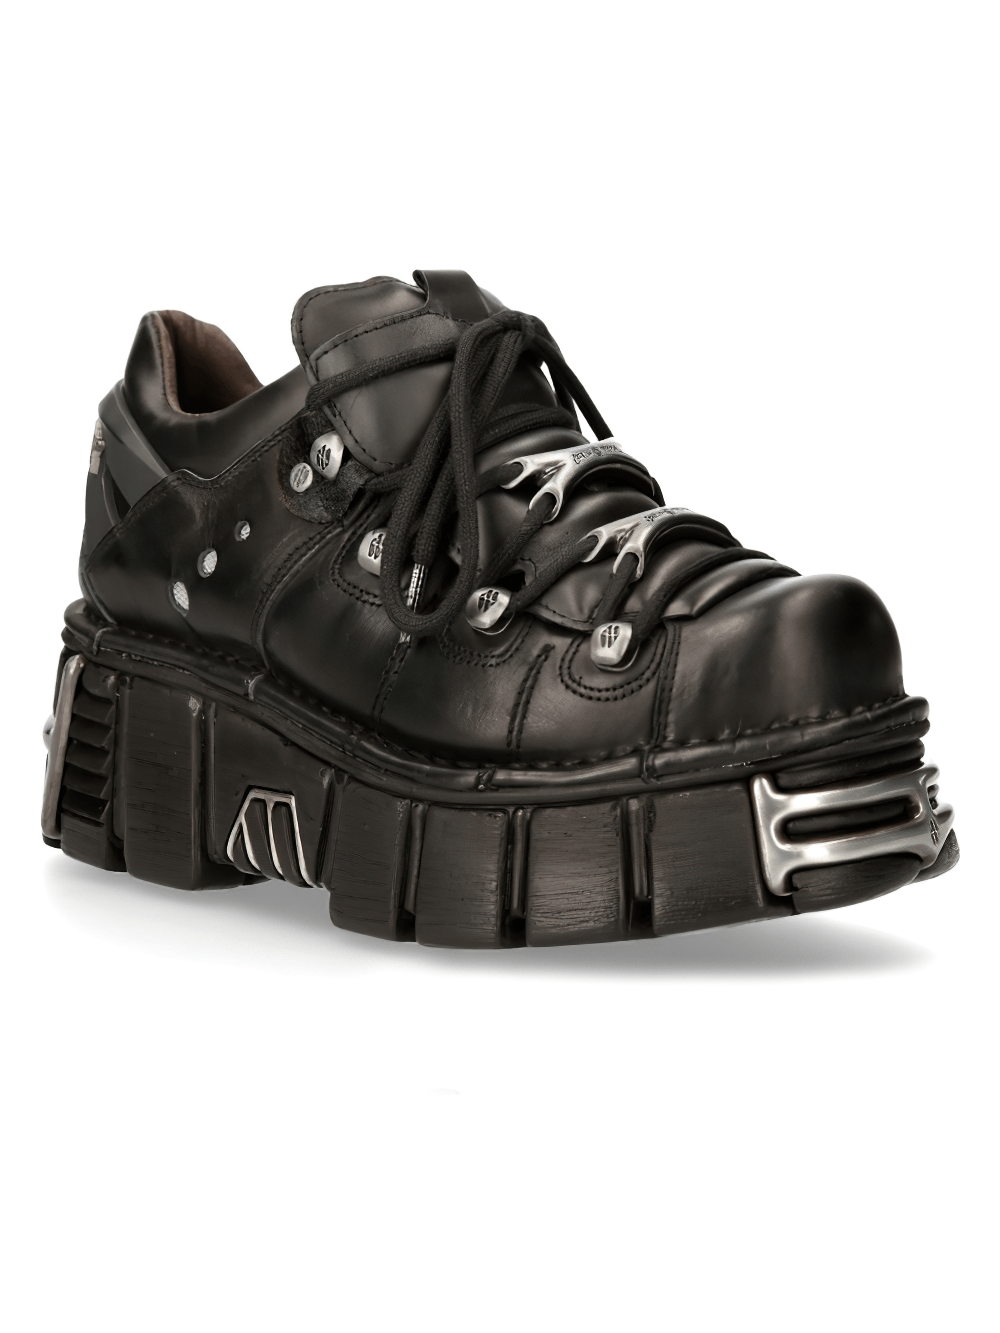 NEW ROCK Unisex Black Lace-Up Platform Ankle Boots